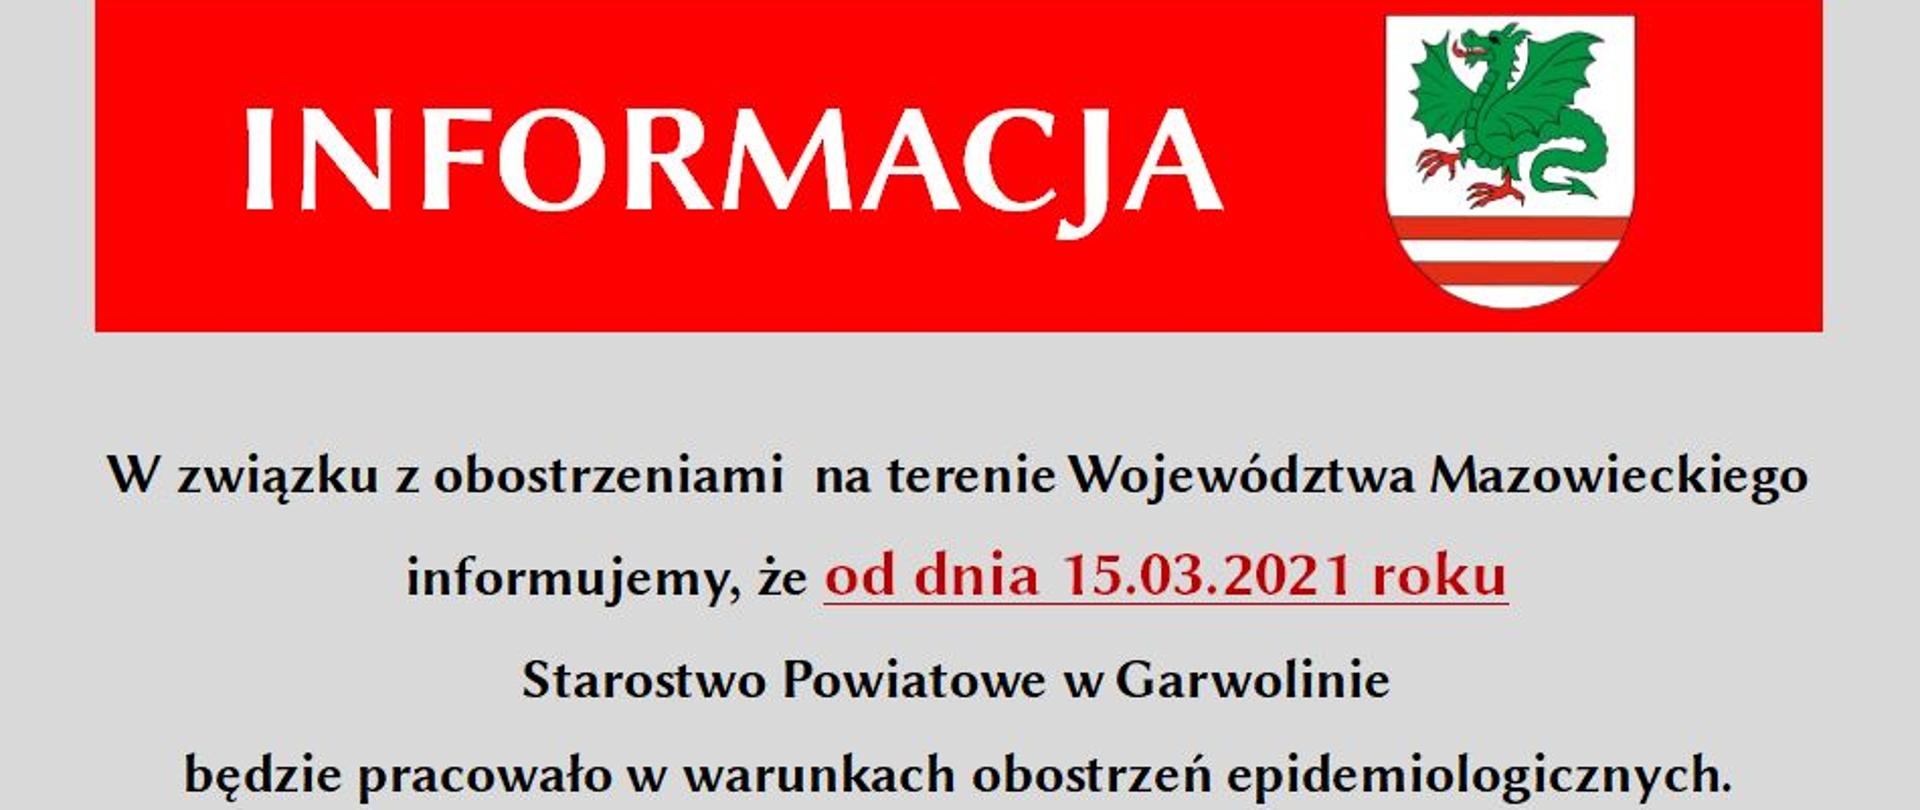 Informacja w związku z obostrzeniami na terenie Województwa Mazowieckiego i pracy w Starostwie od dnia 15 marca 2021 roku.